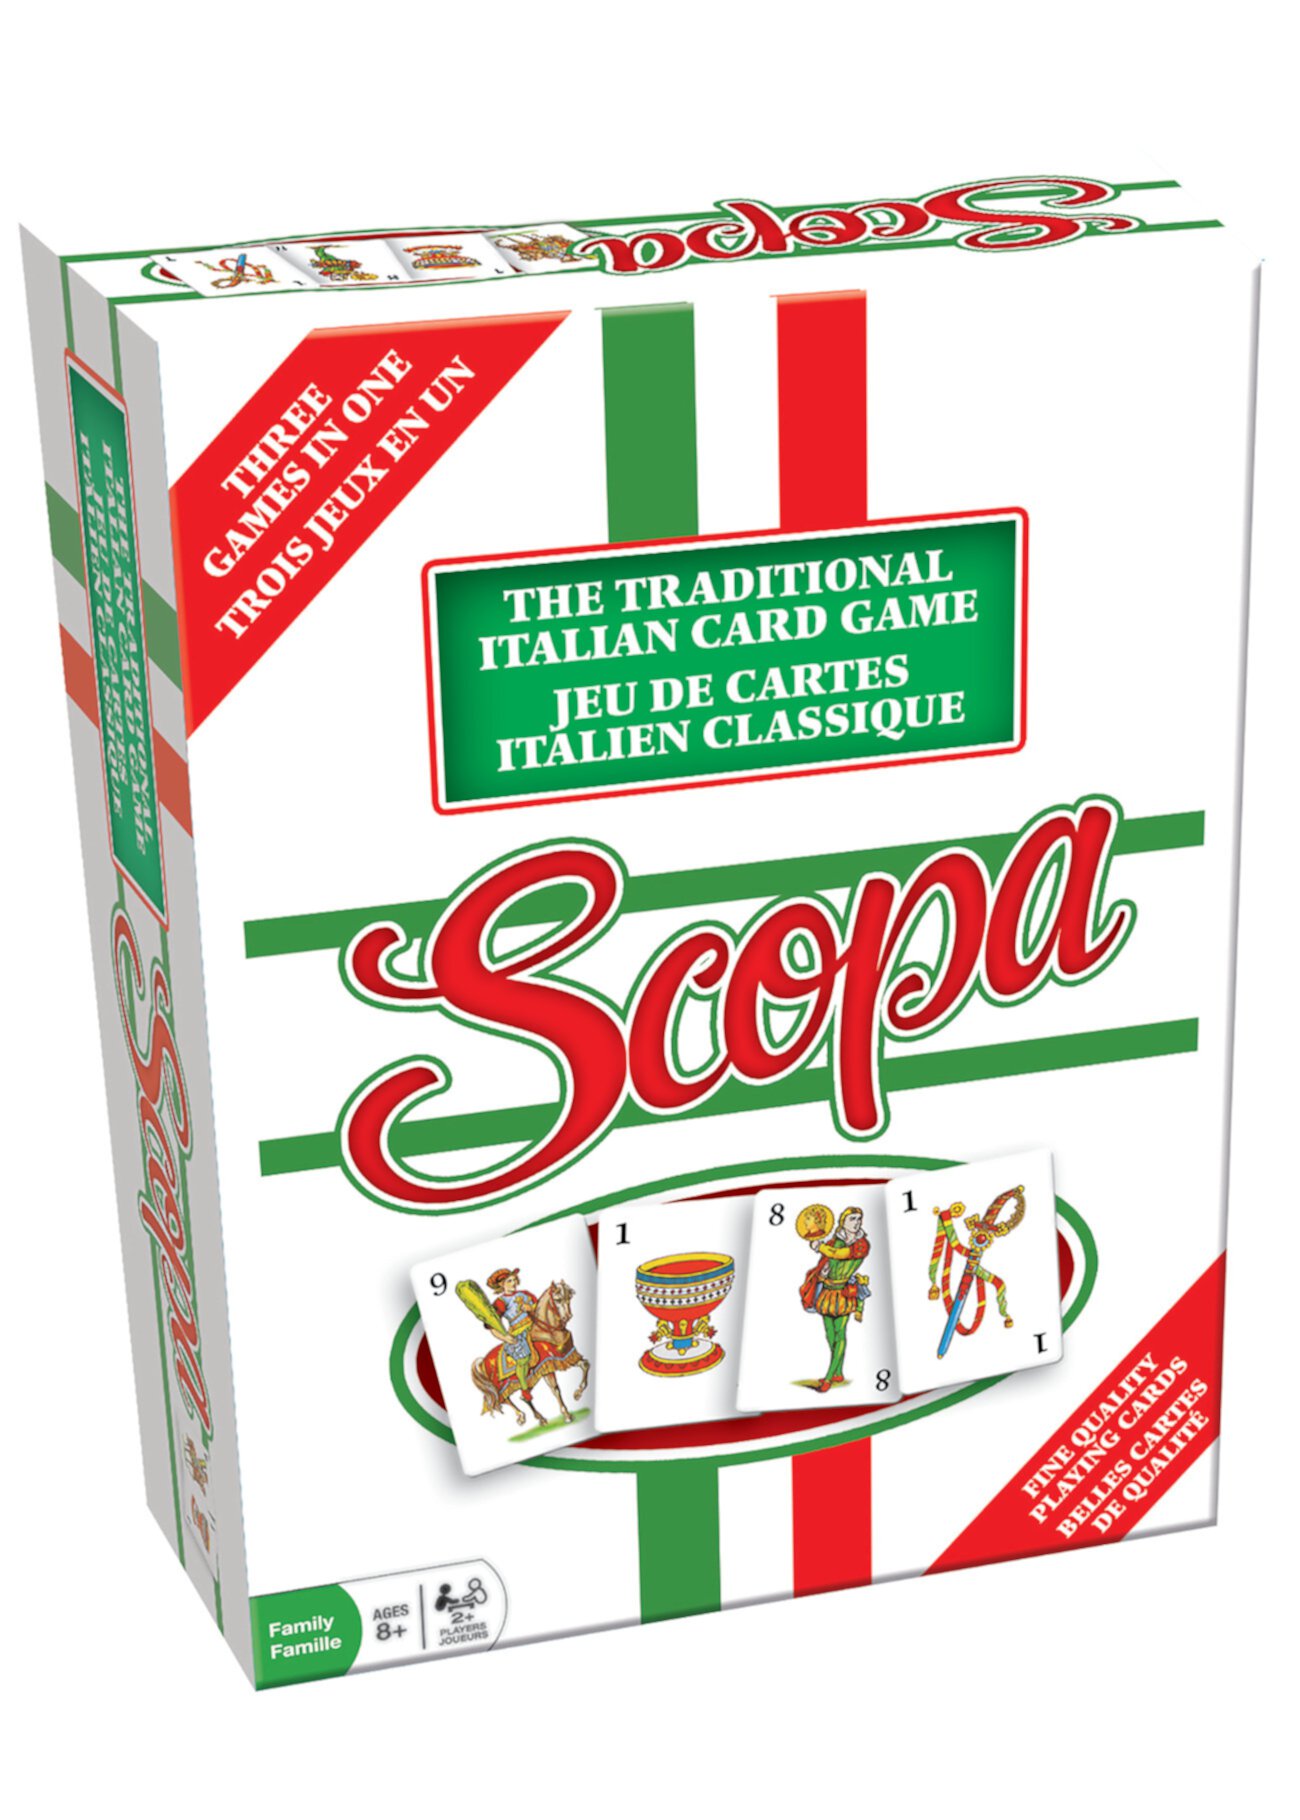 Scopa - традиционная итальянская карточная игра Outset Media